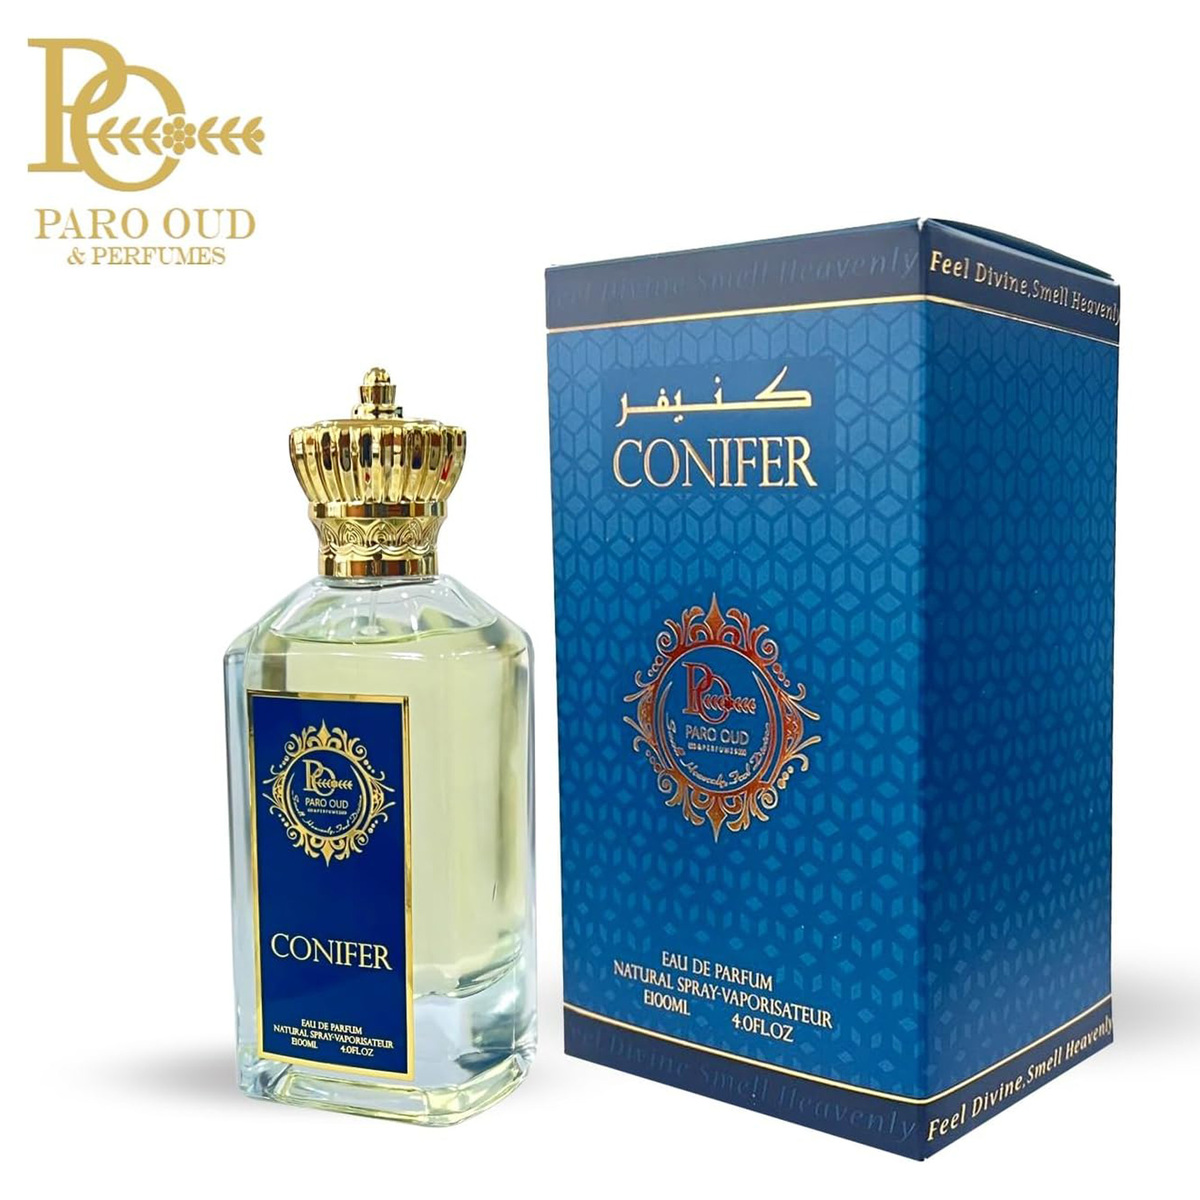 Paro Oud Conifer Eau de Parfum, 100 ml